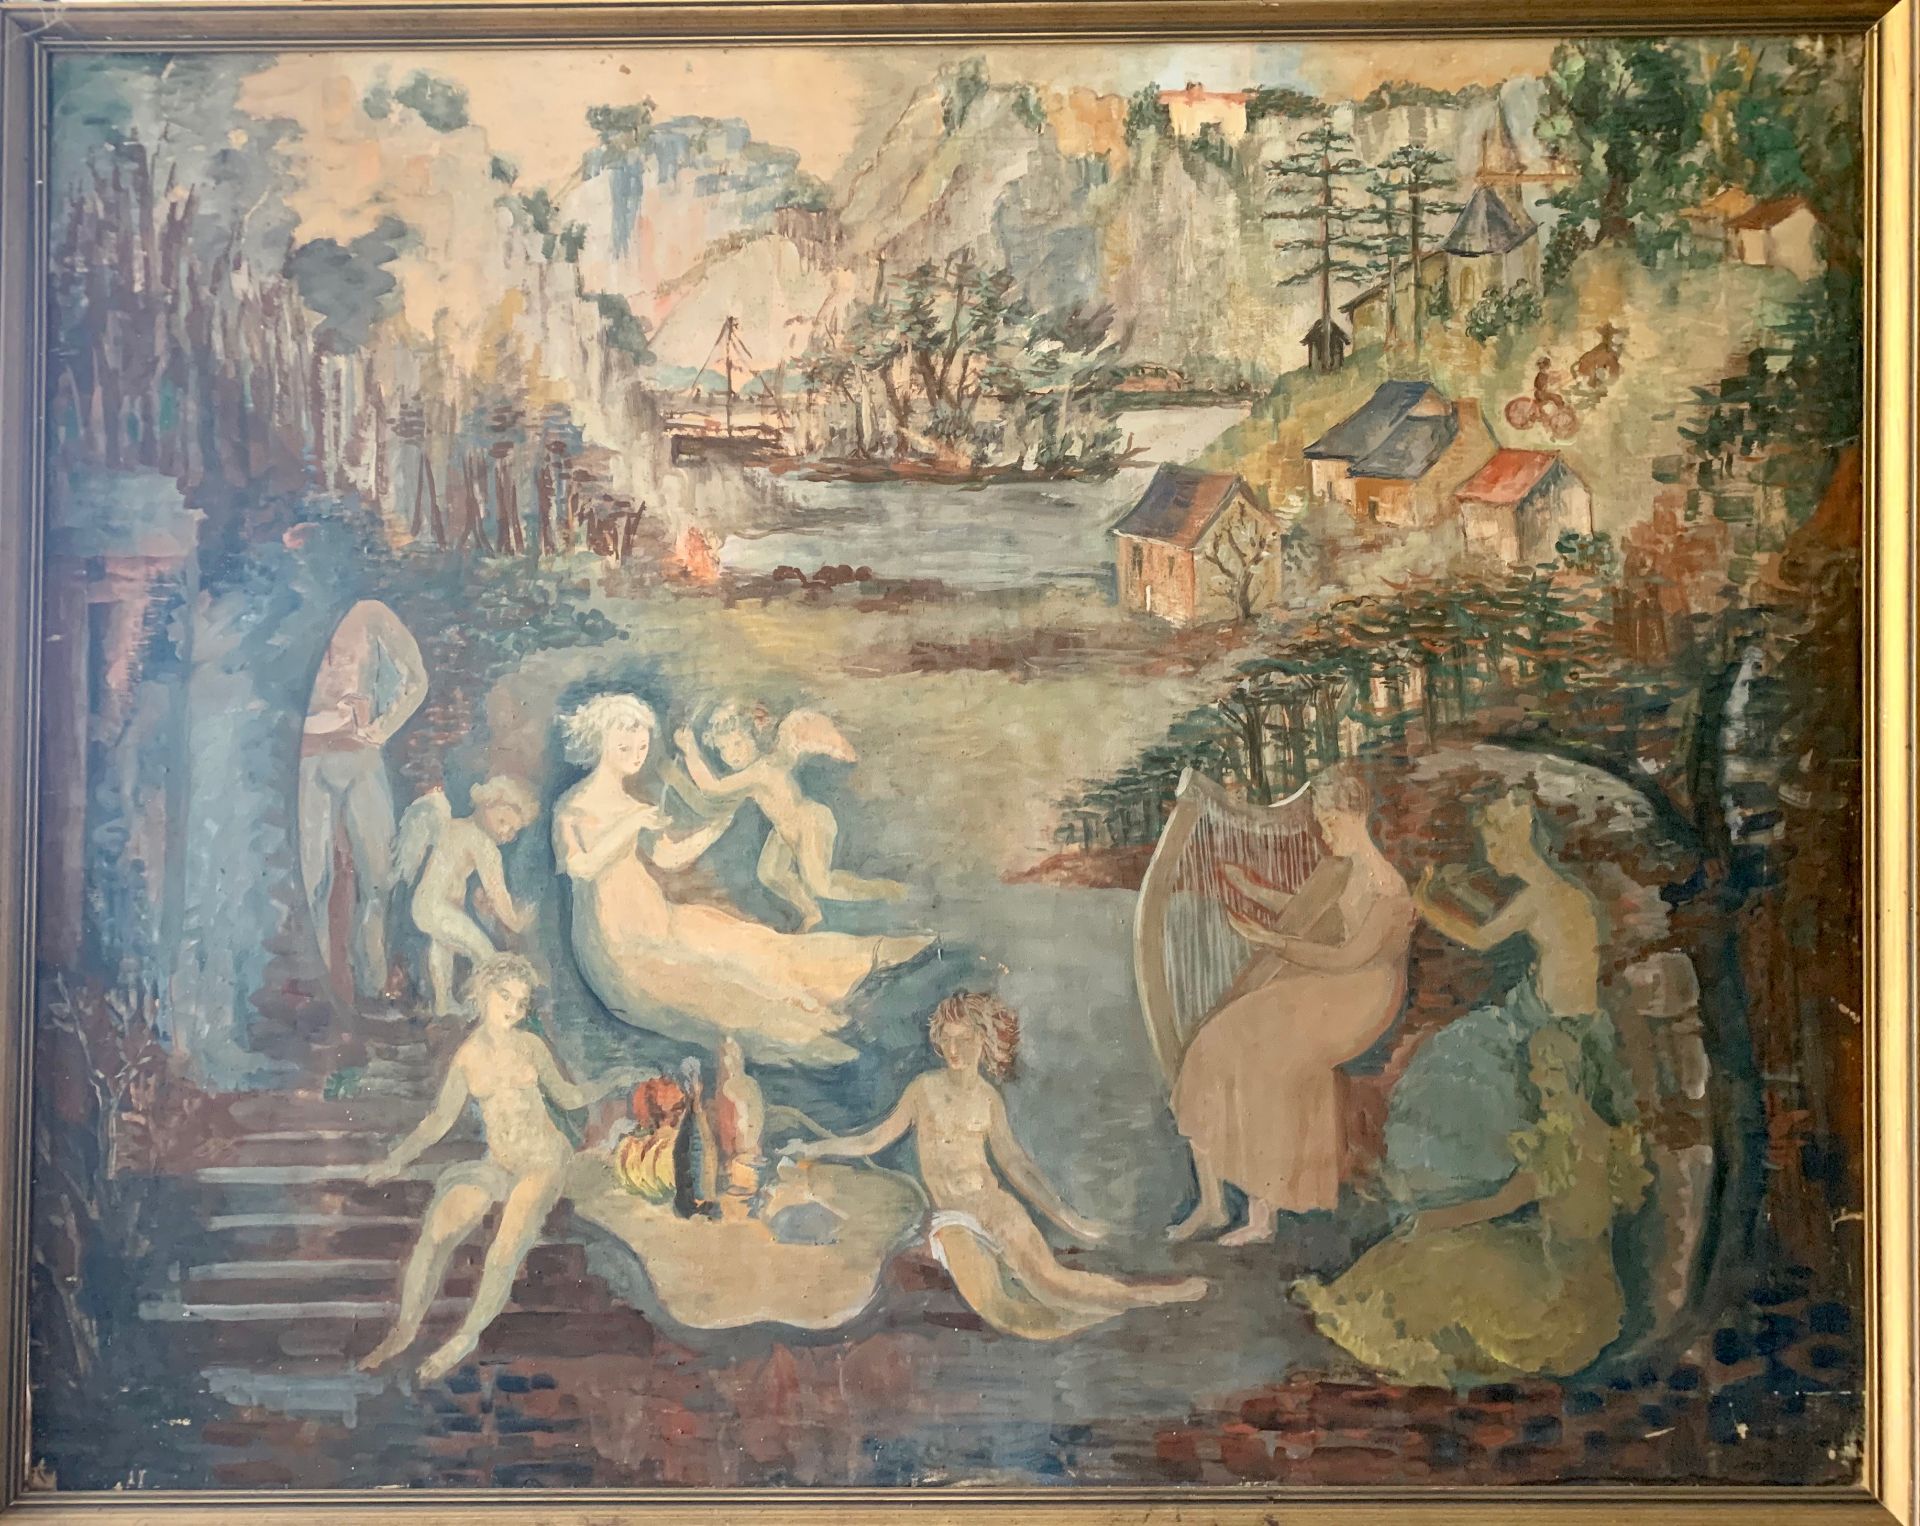 Ecole belge du XXème siècle. Composition onirique. Gouache sur toile fine. 80 x 100cm -